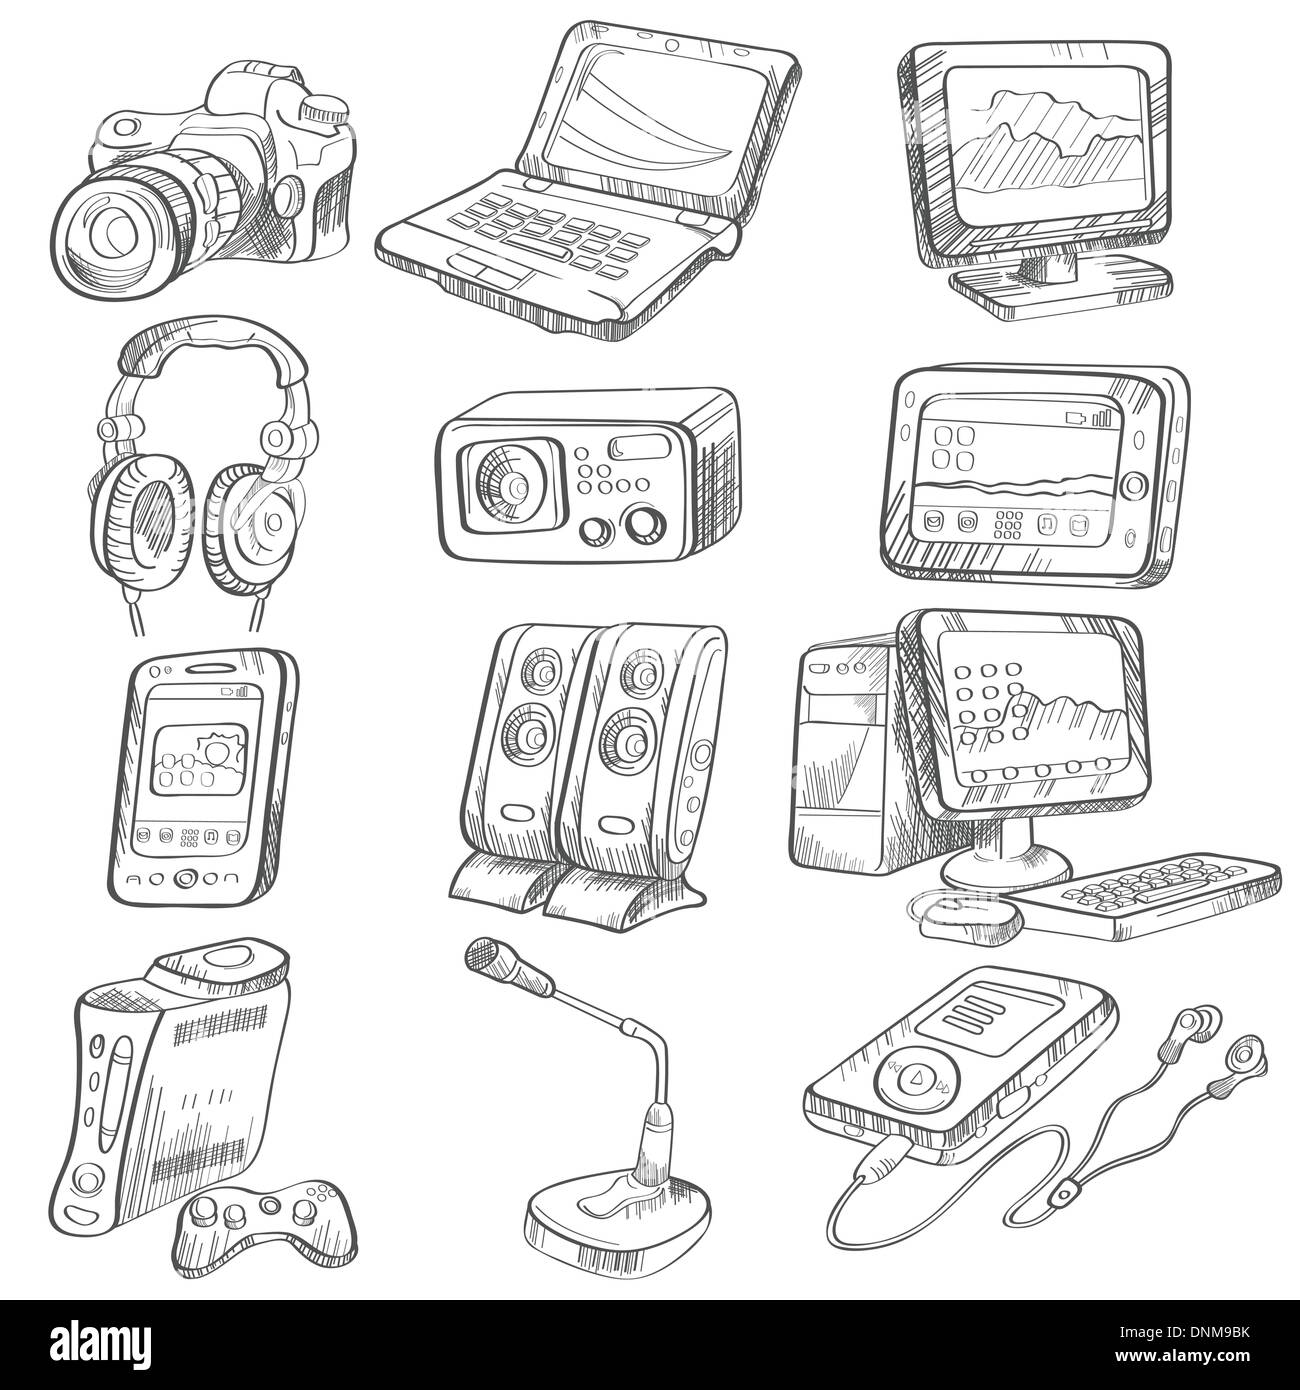 Eine Vektor-Illustration der Bleistiftzeichnung des elektronischen Gadgets Stock Vektor